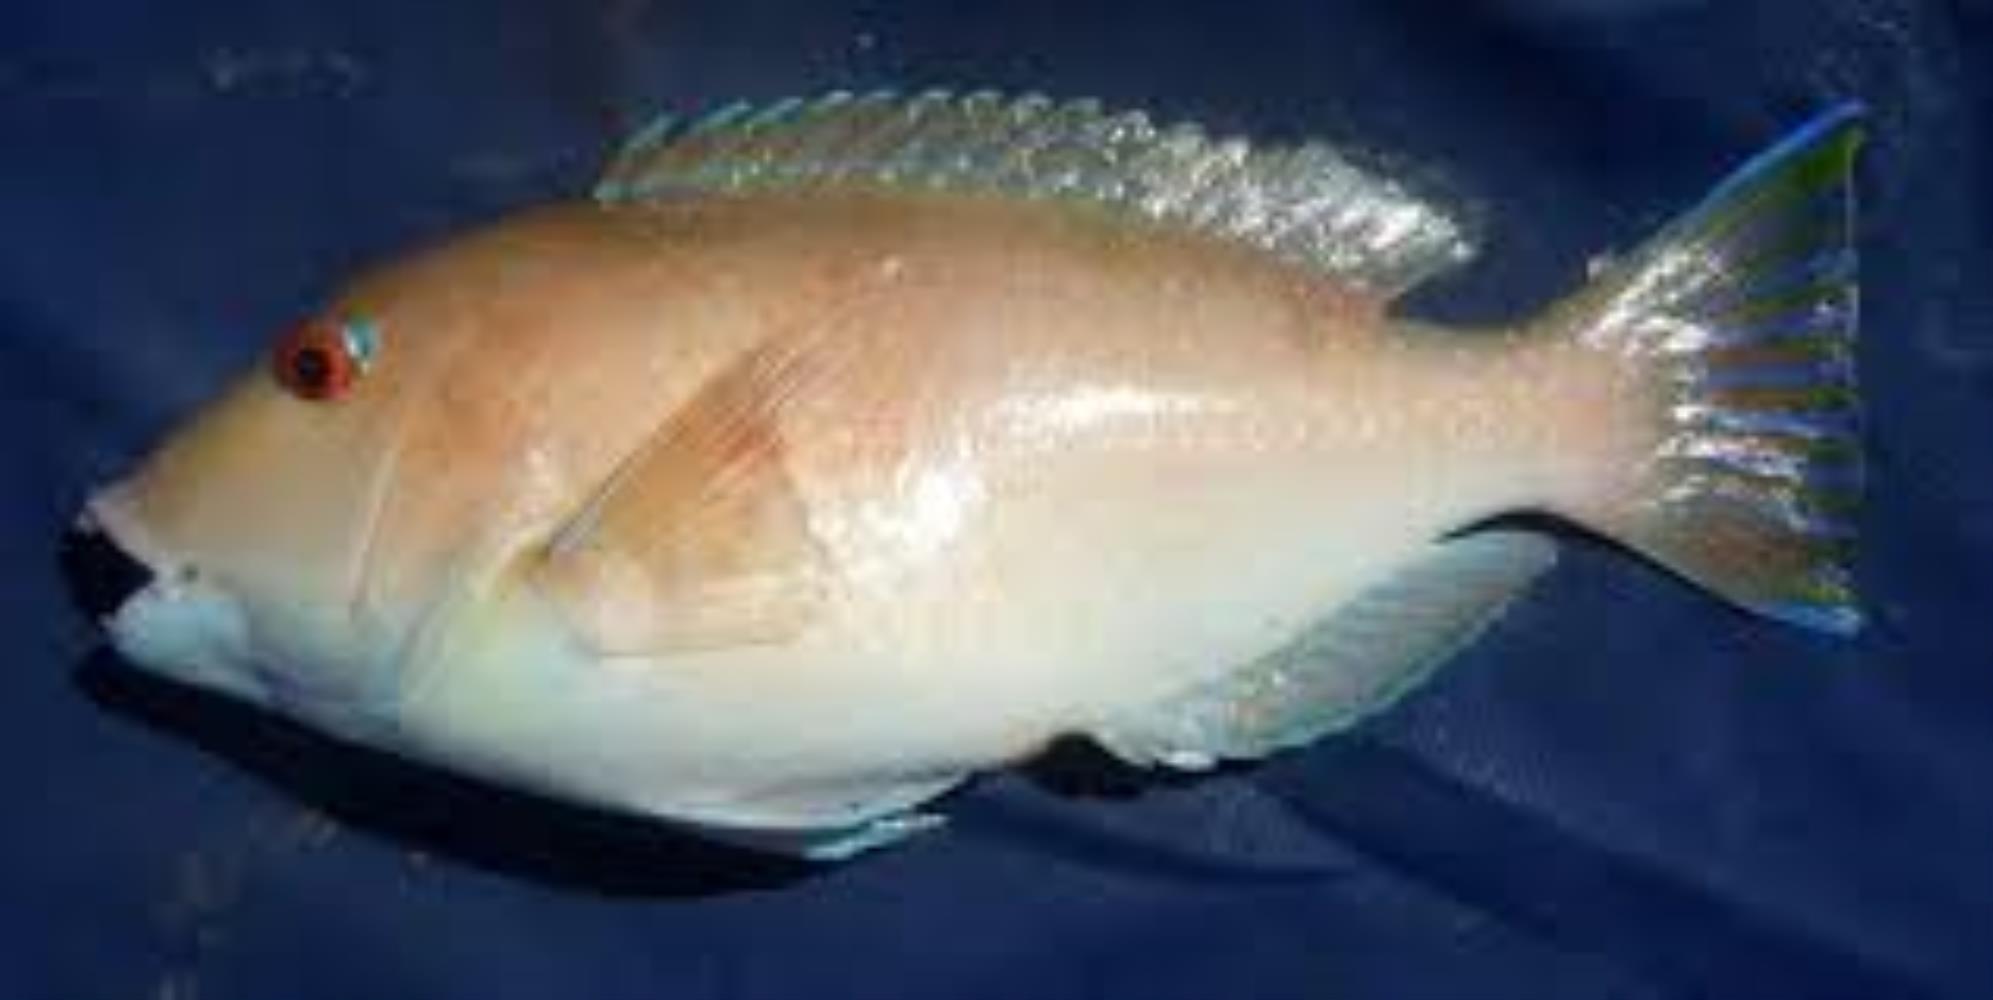 Venus Tuskfish